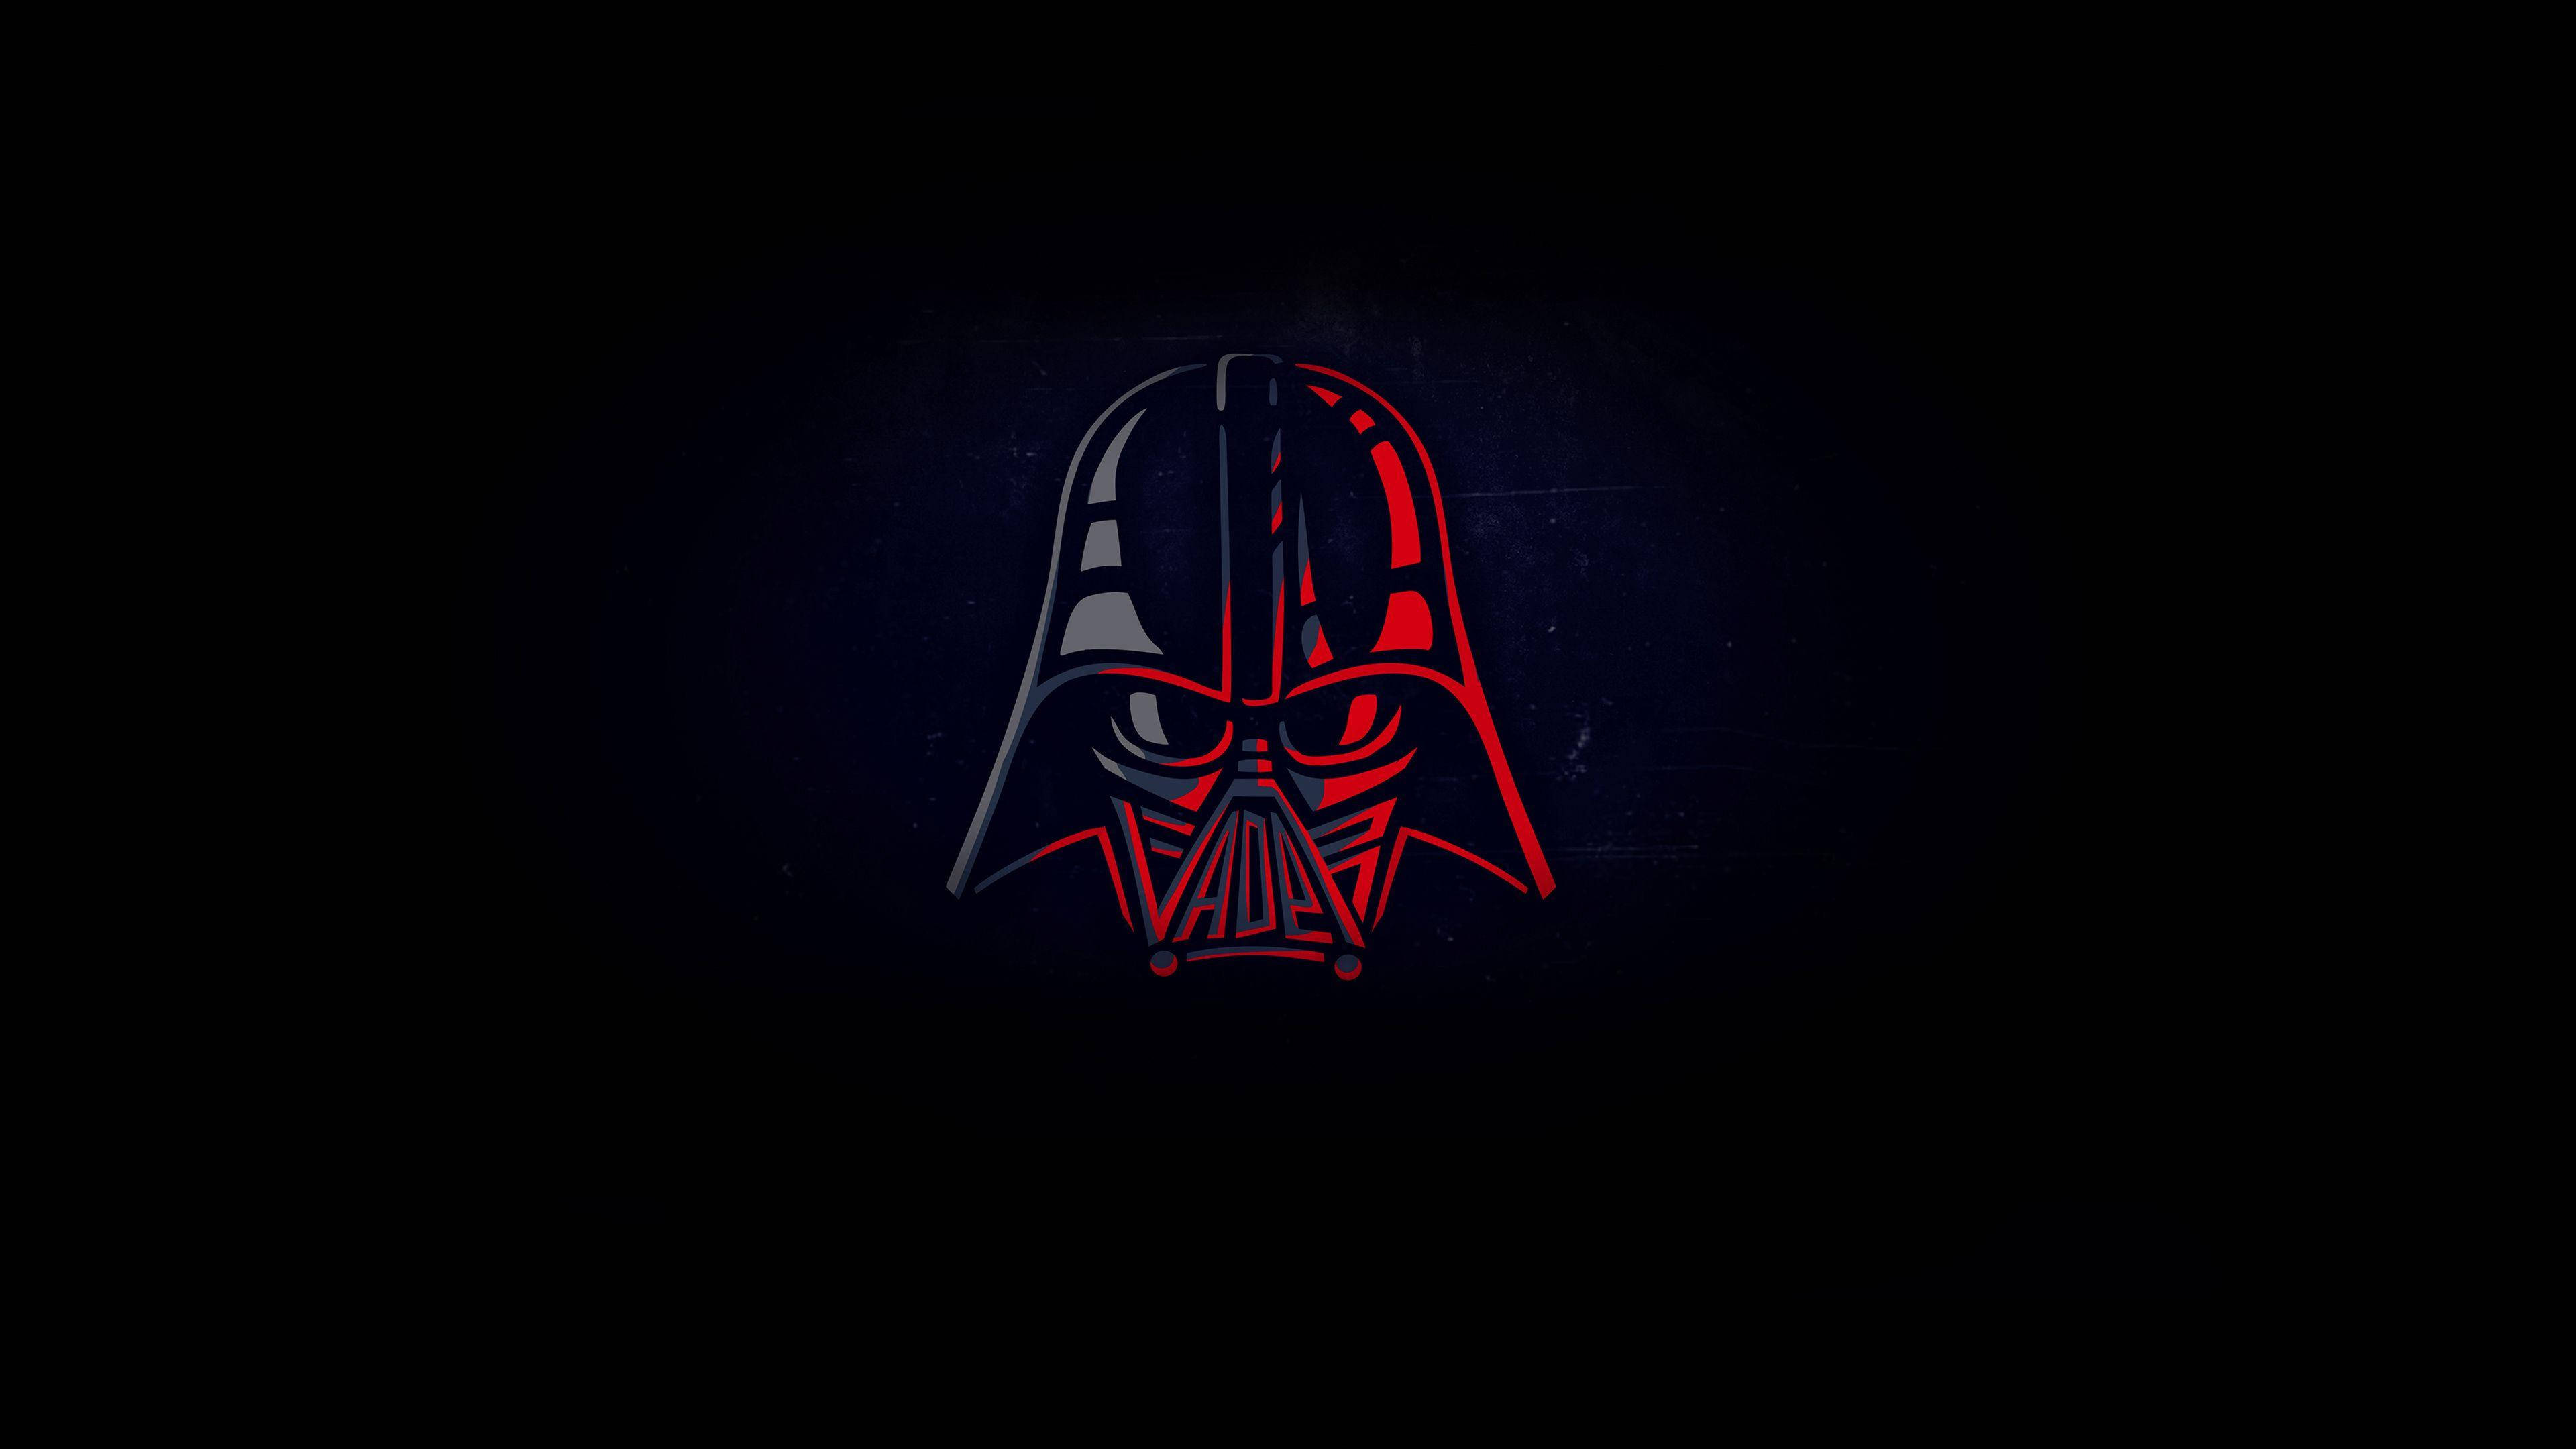 Darth Vaders Minimalist Star Wars Mask Wallpaper